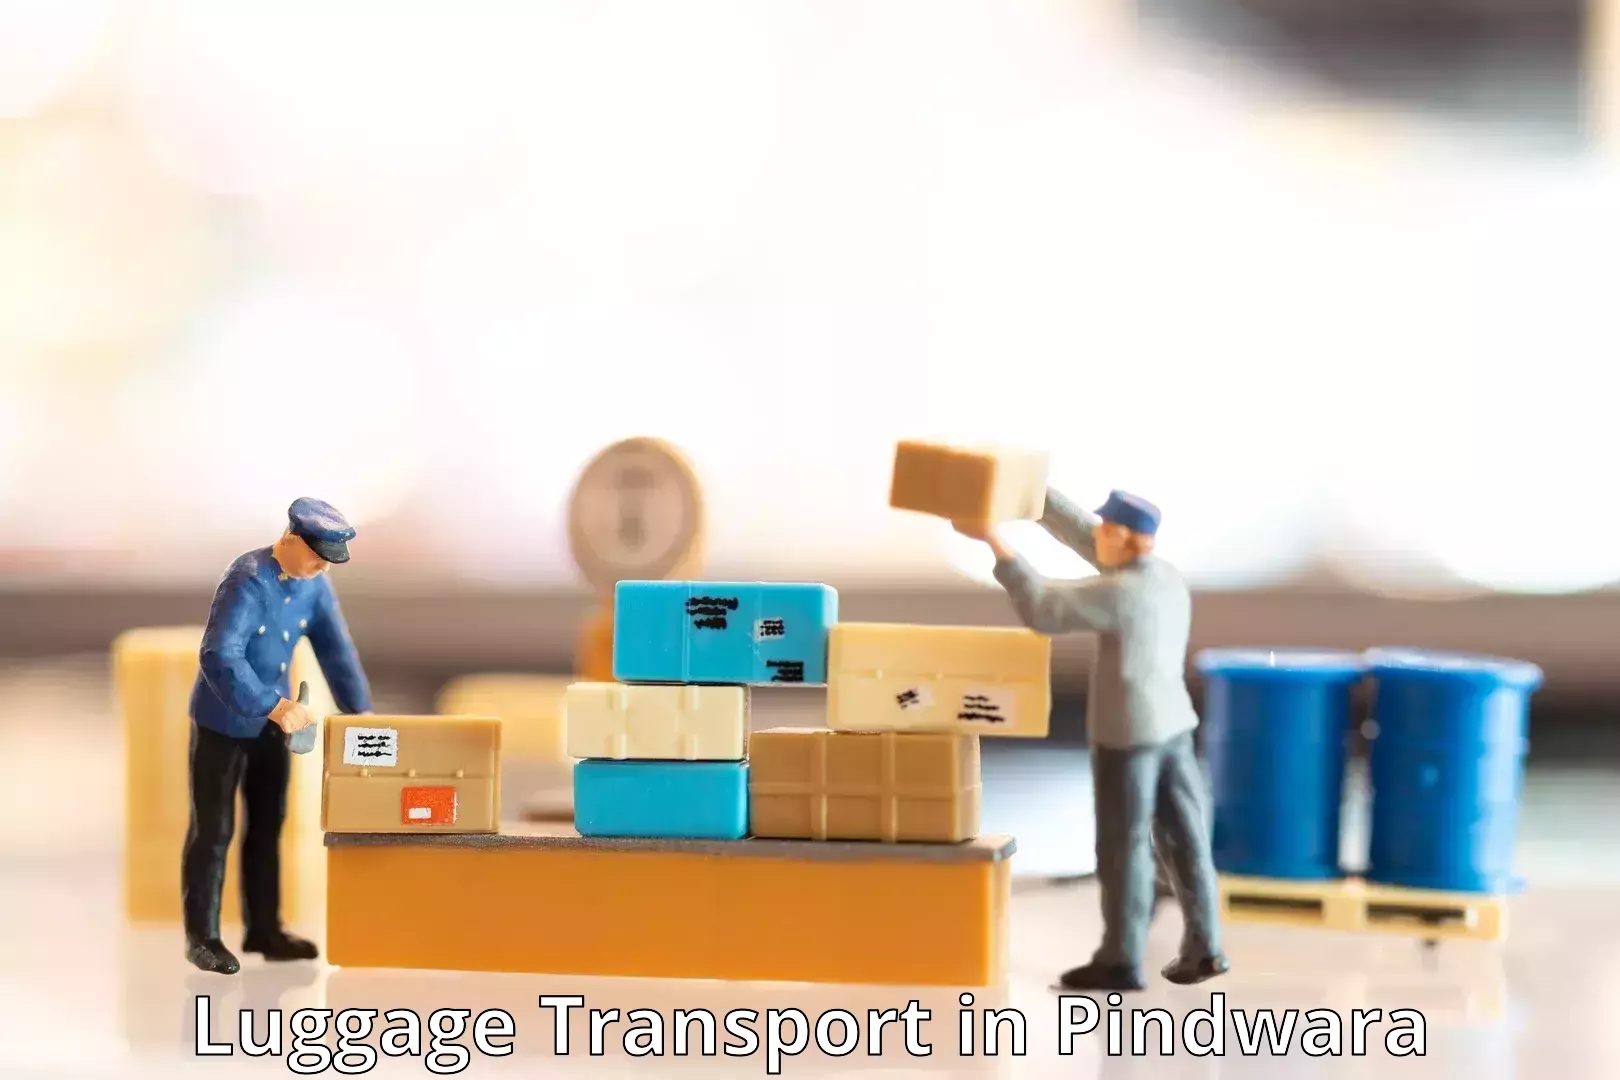 Baggage transport coordination in Pindwara